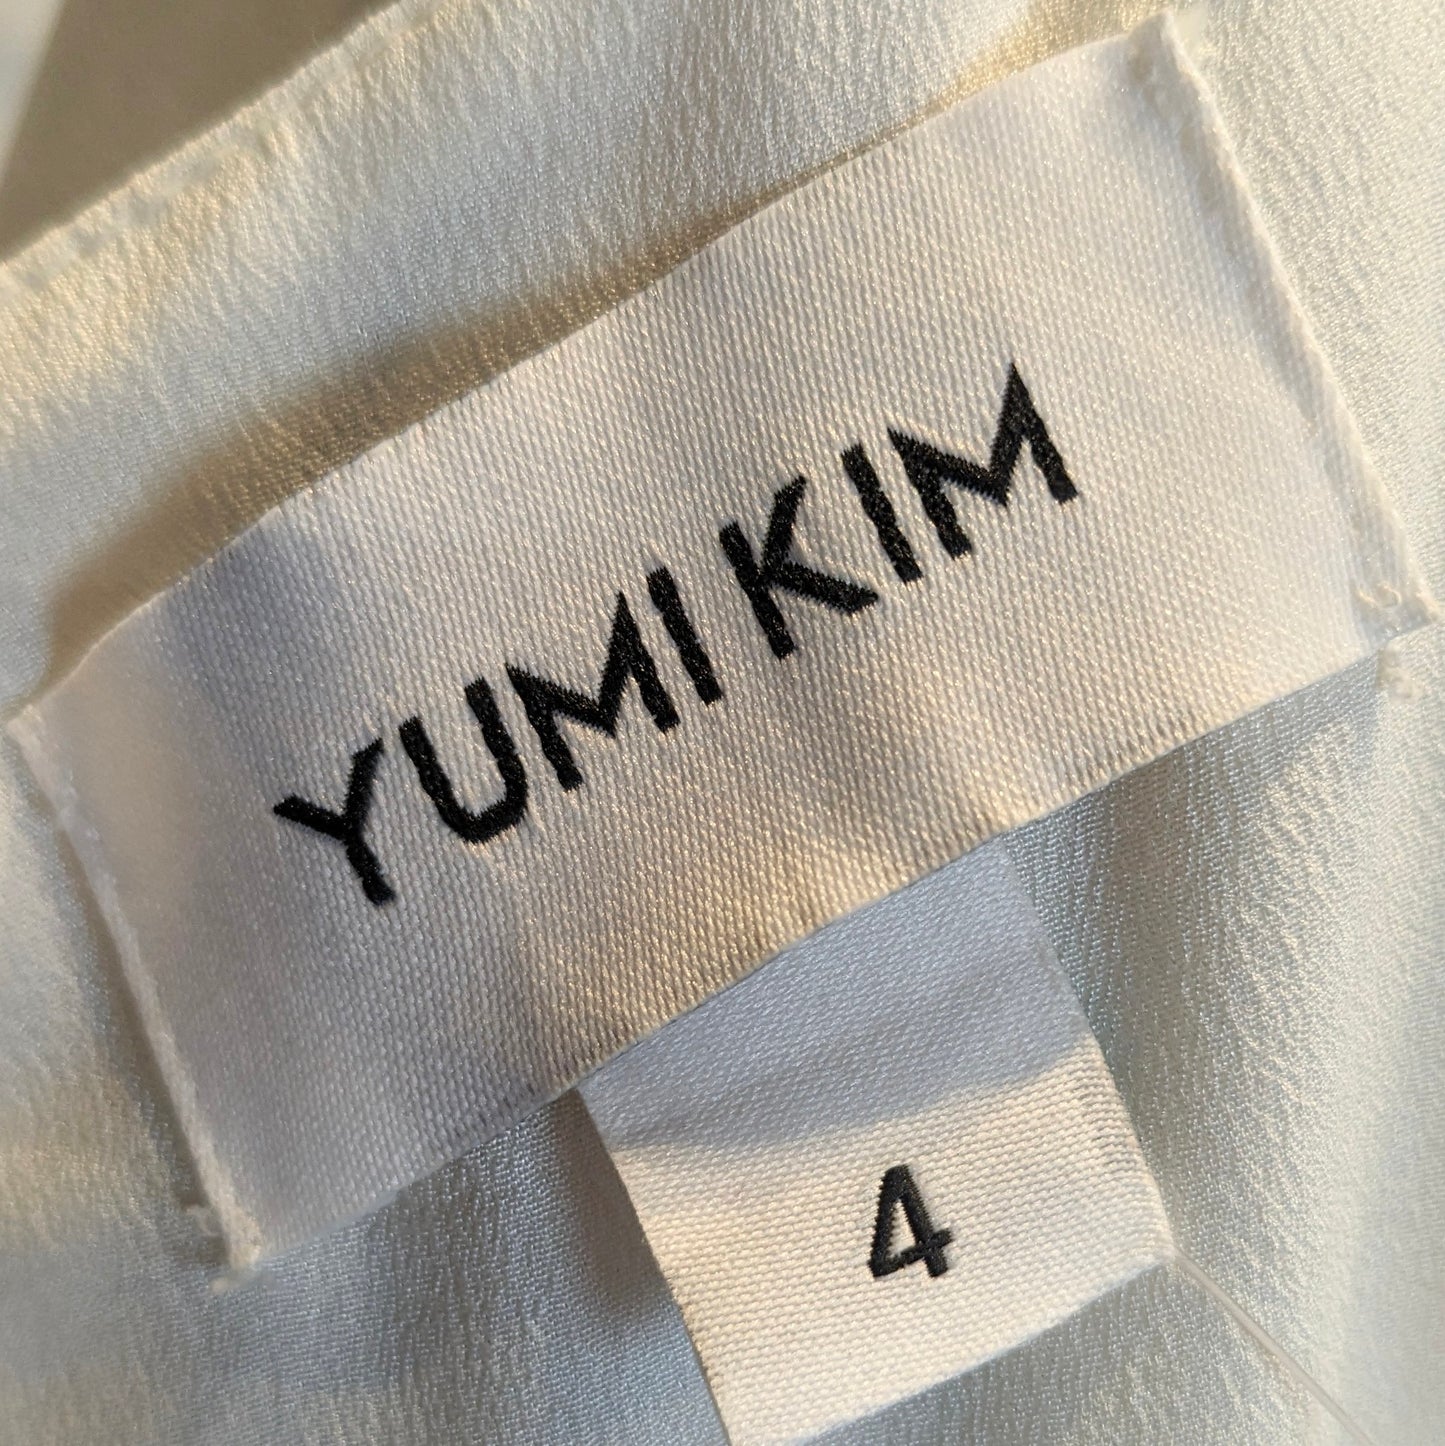 Yumi Kim Floral Maxi Dress Sz 4